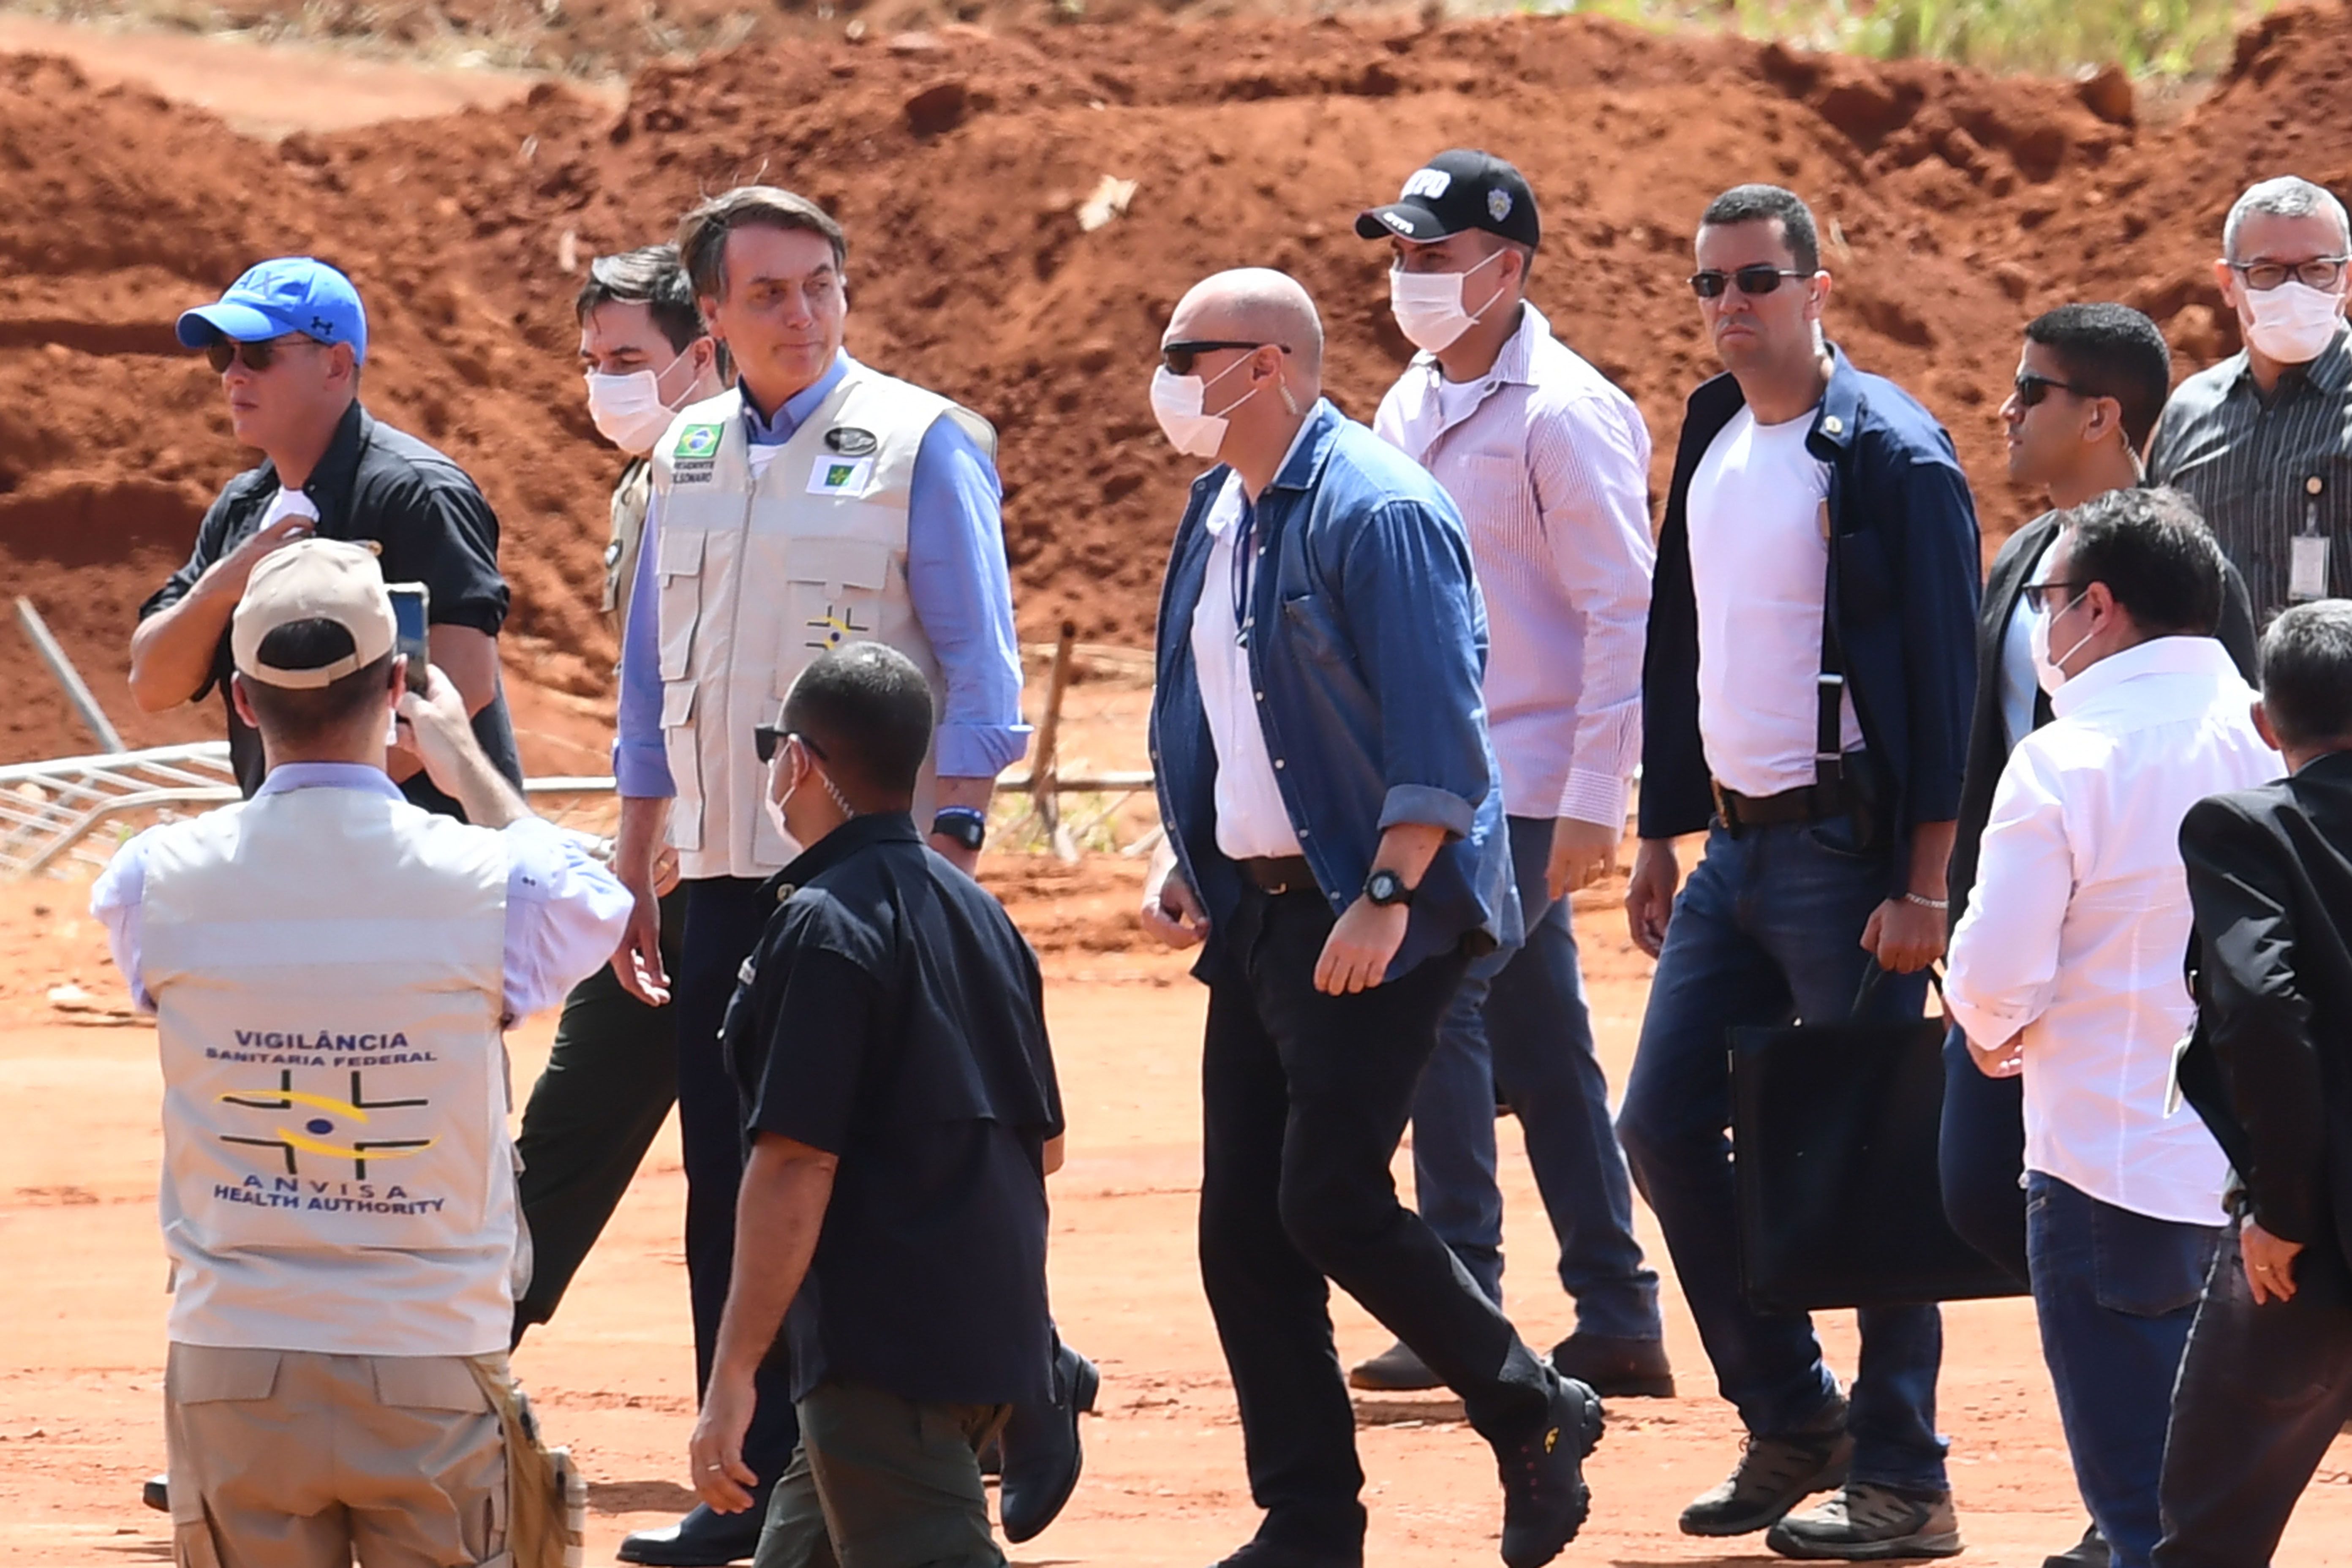 Президент Жаир Болсонару (3-L) посещает строительную площадку полевого госпиталя для людей, инфицированных новым коронавирусом, в Агуас-Линдас, штат Гояс, Бразилия, 11 апреля 2020 года.